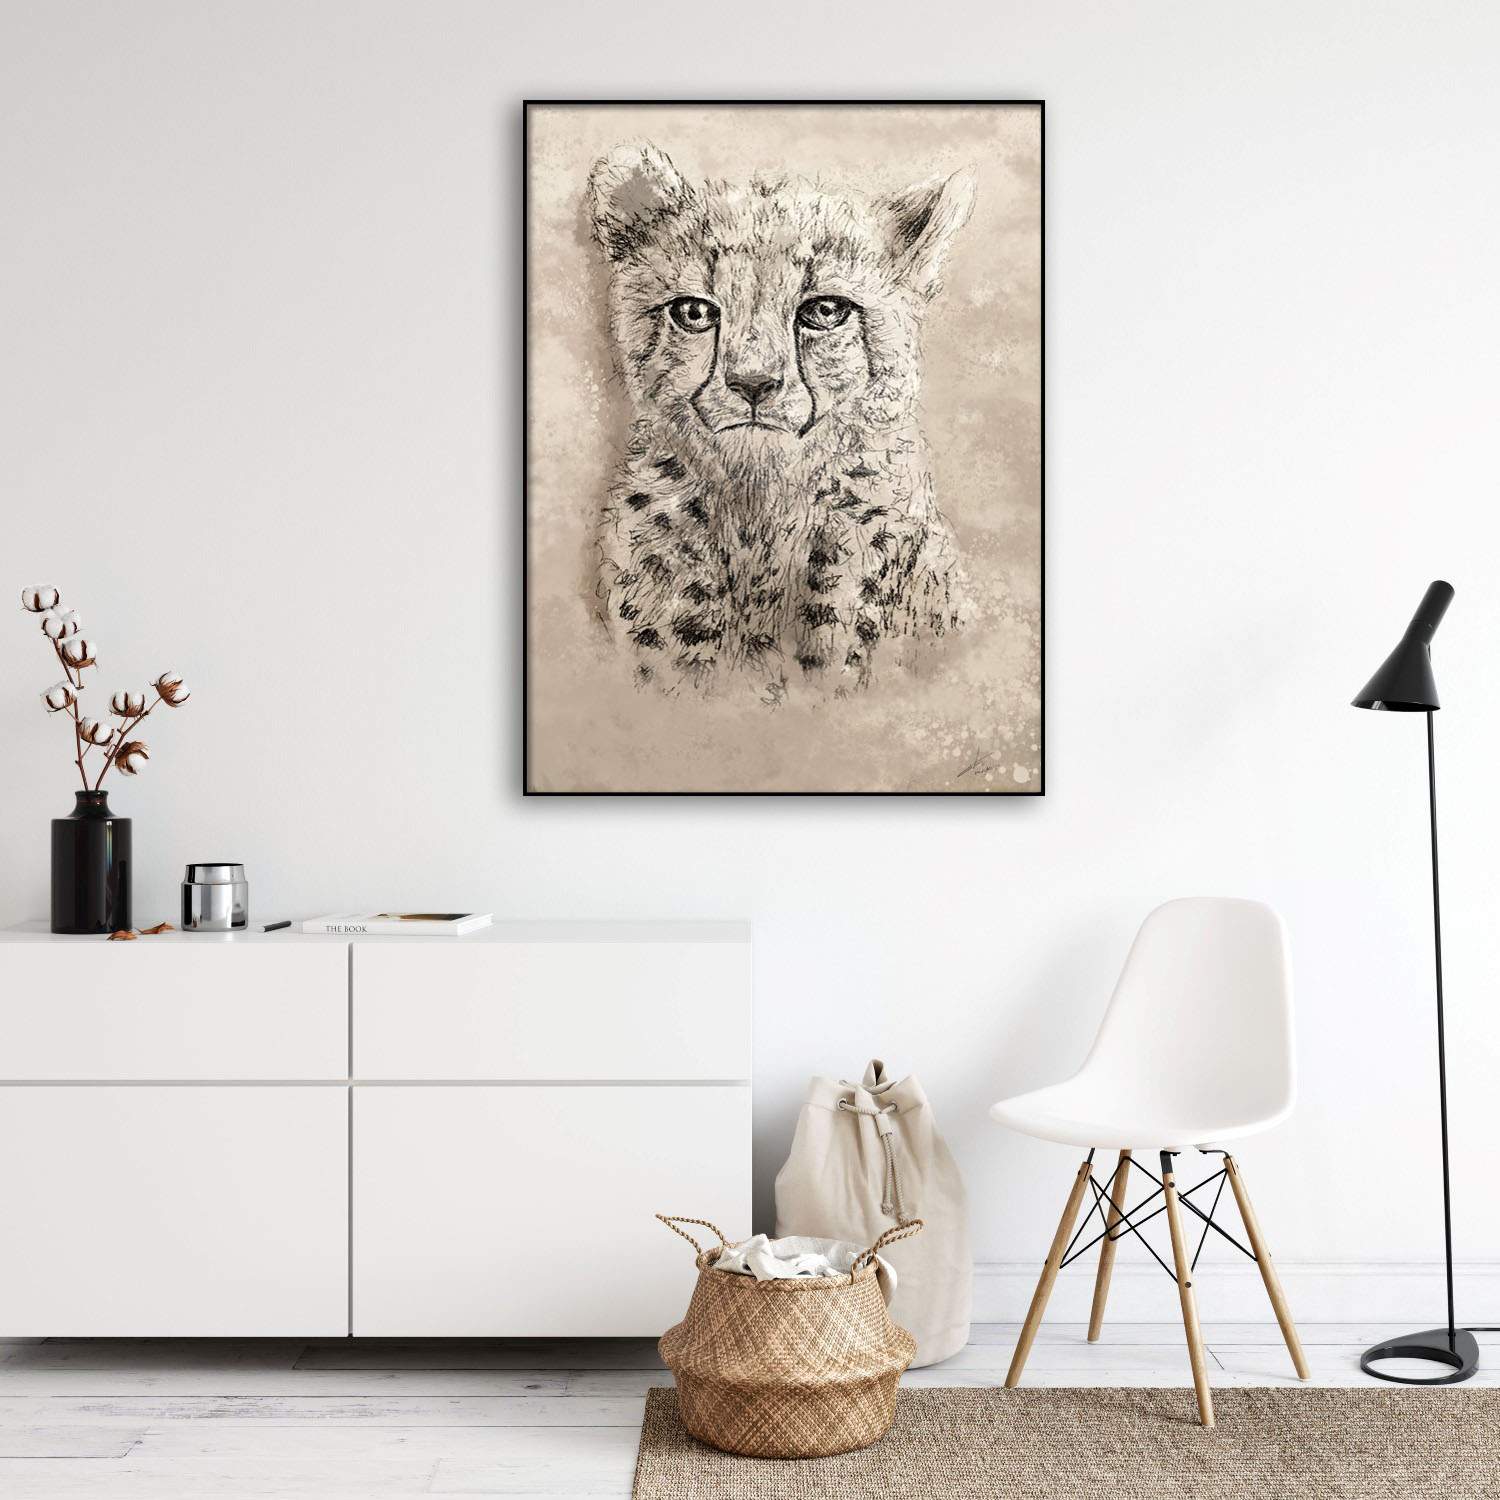 Pentekening jonge luipaard boho stijl decoratie